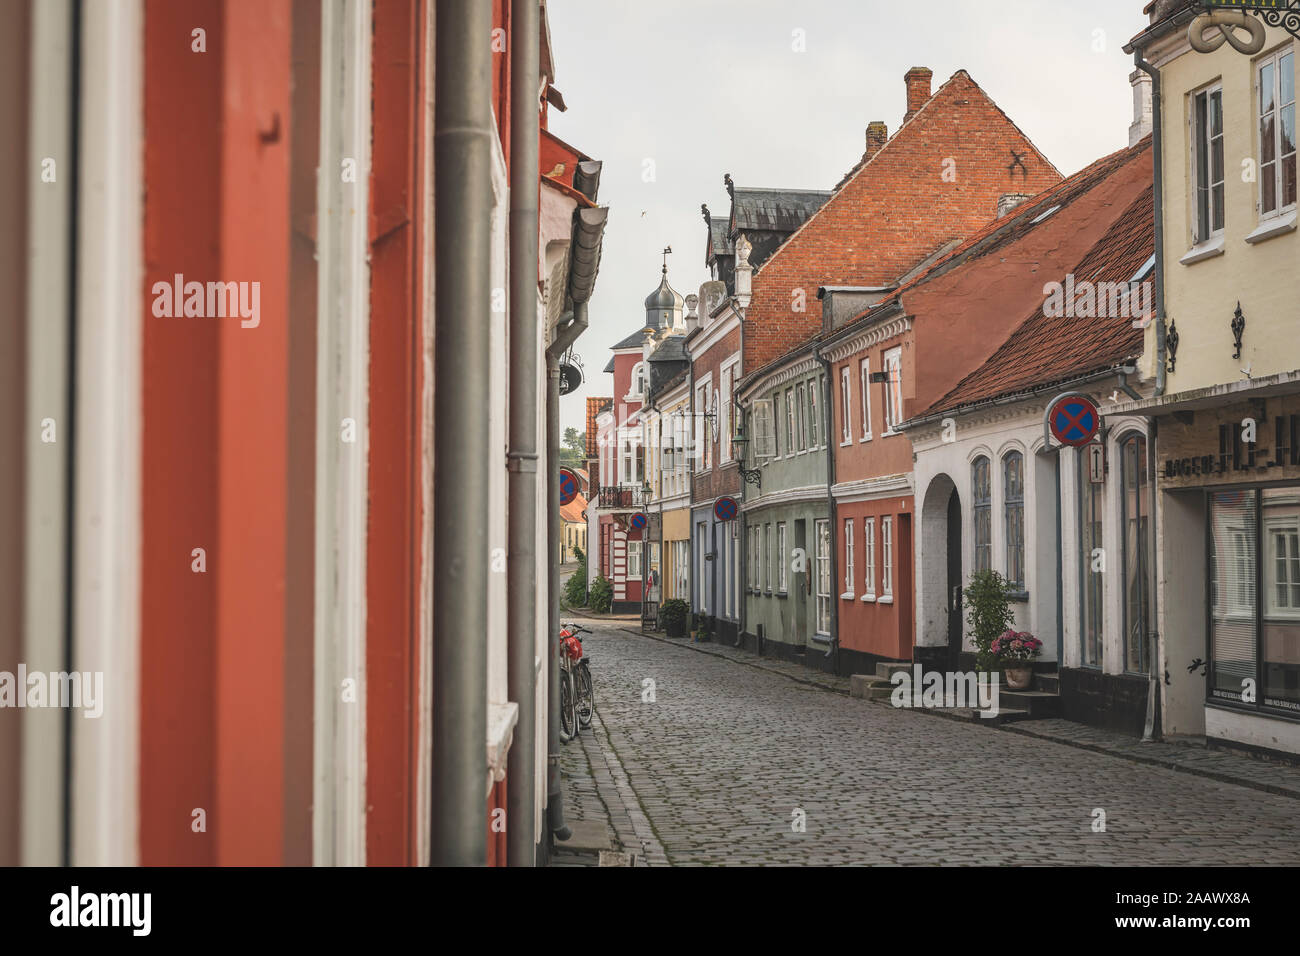 Dinamarca, Aeroe, Aeroskobing, coloridas casas tradicionales vistos a lo largo de calle vacía Foto de stock